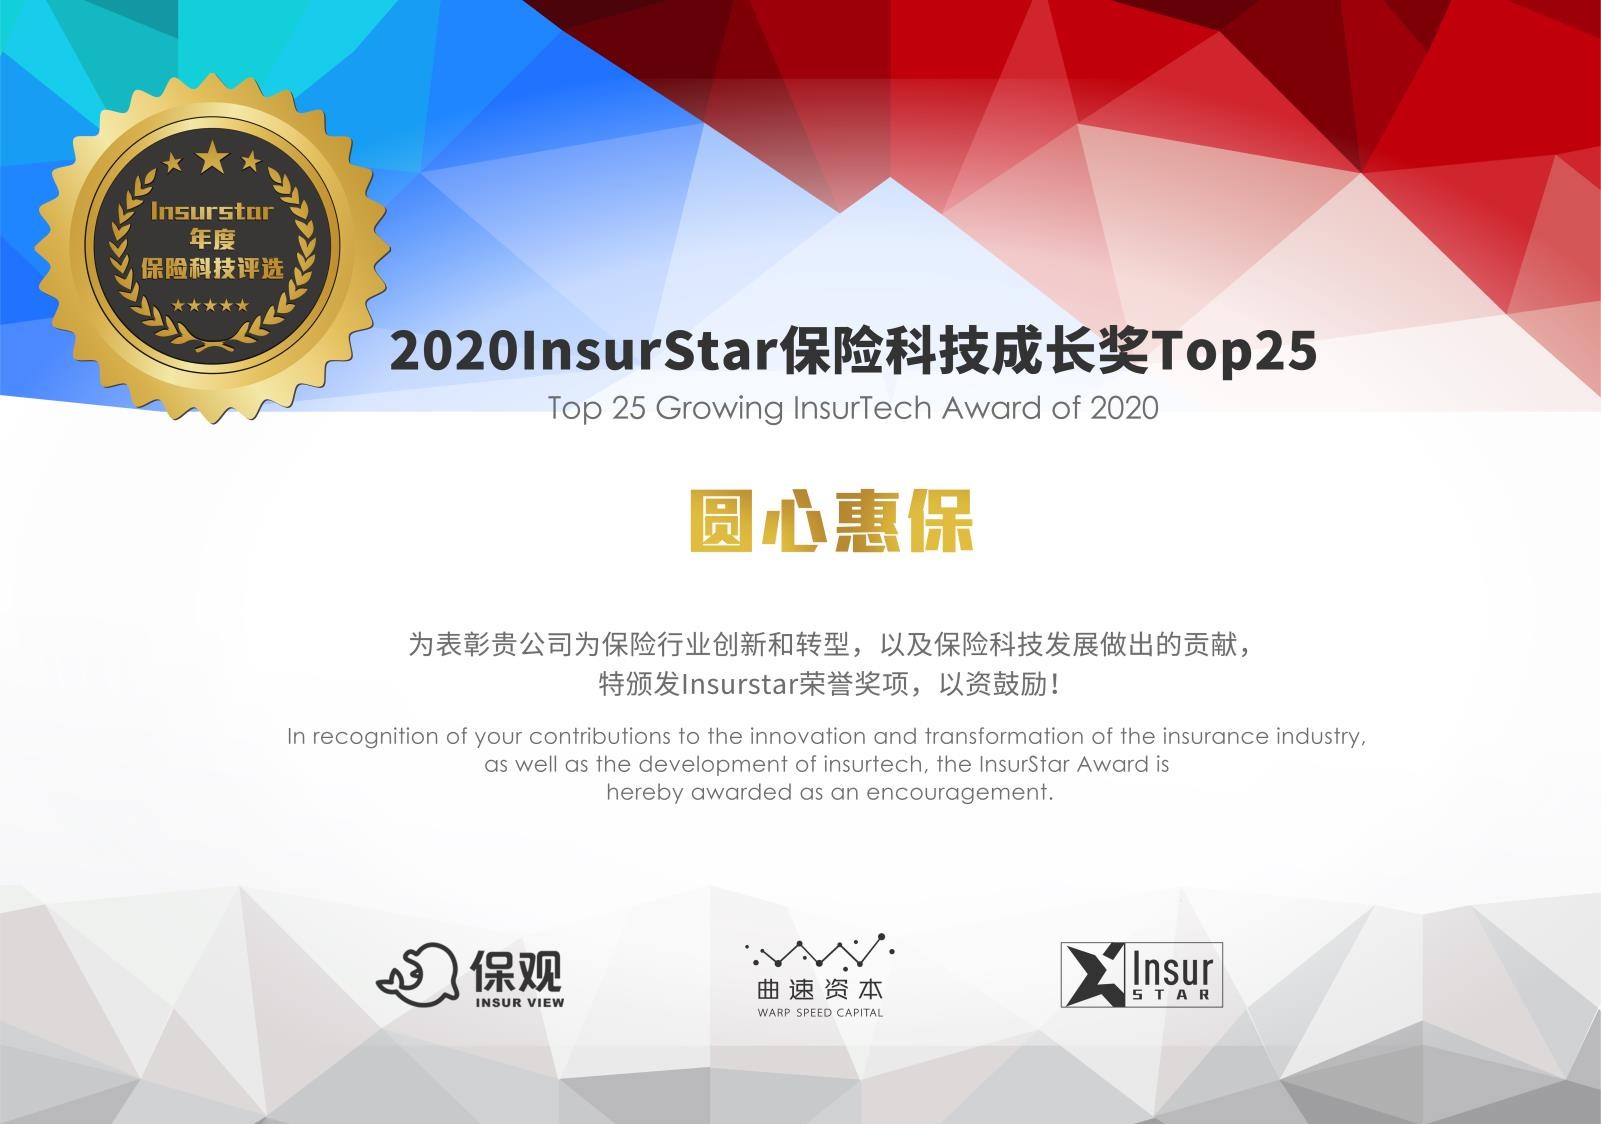 荣耀不止步 | 圆心惠保荣膺“2020 InsurStar保险科技成长奖”